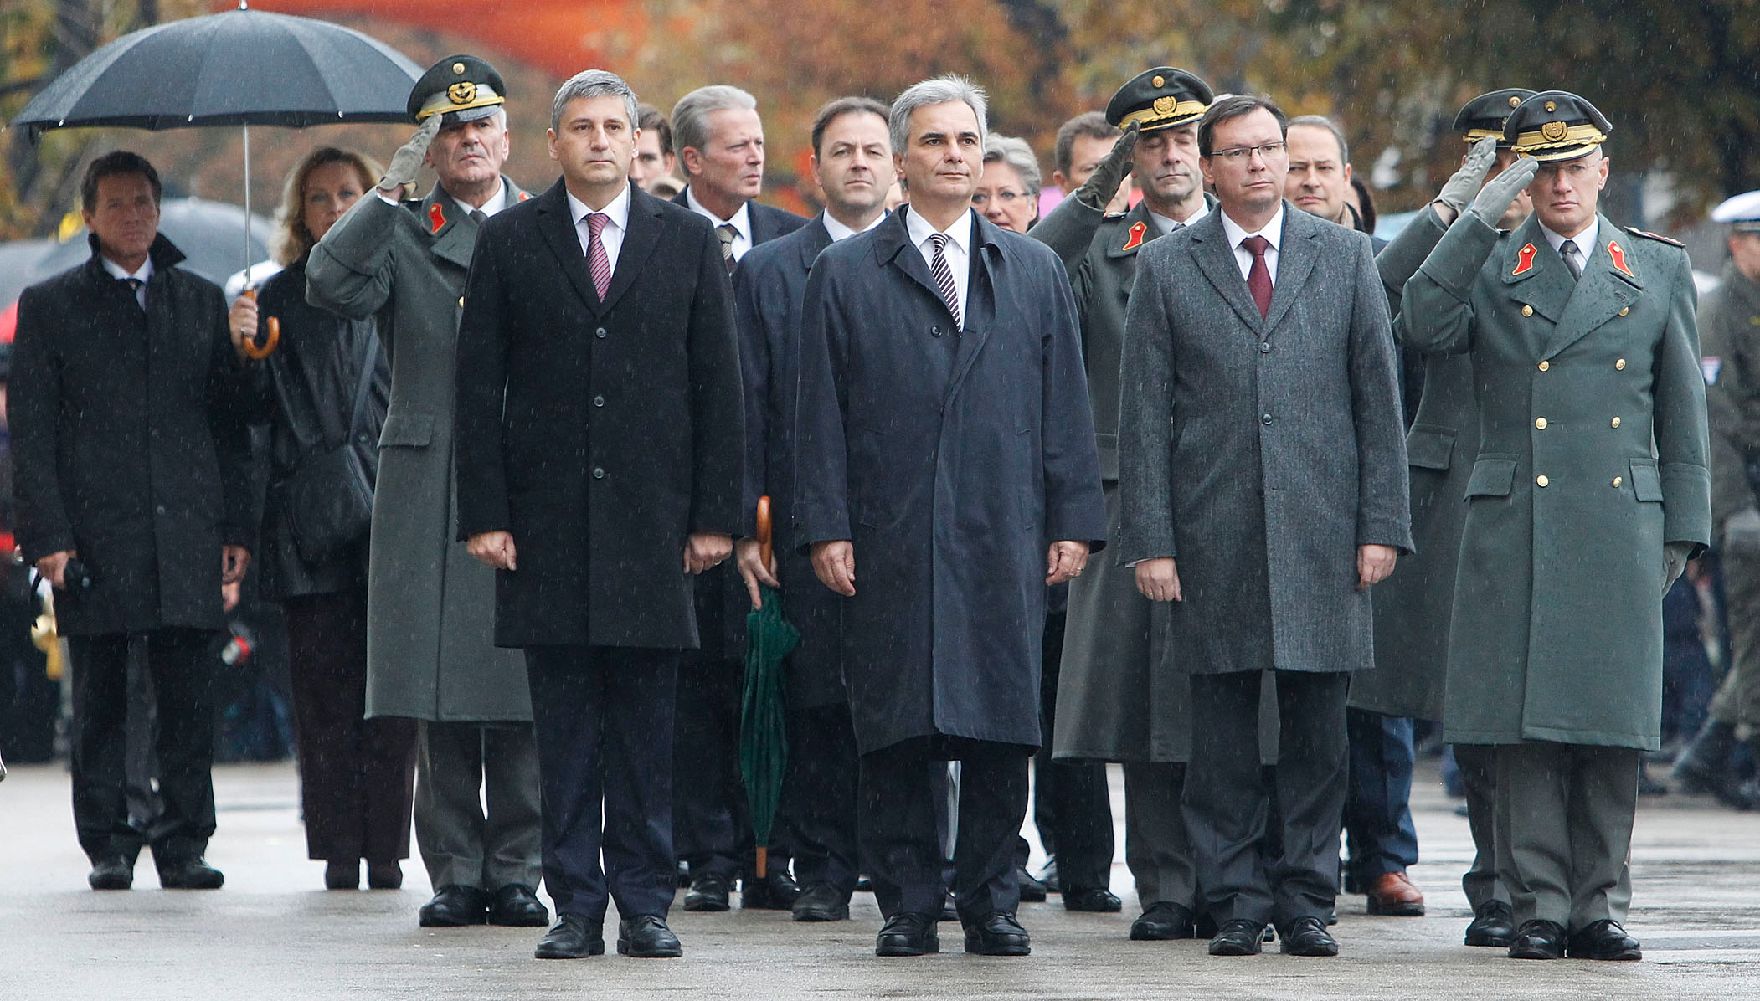 Am 26. Oktober 2011 fand anlässlich des Nationalfeiertages die traditionelle Kranzniederlegung am Grabmal des unbekannten Soldaten - zum Gedenken an die Gefallenen und Vermissten der beiden Weltkriege in der Krypta am Wiener Heldenplatz statt.